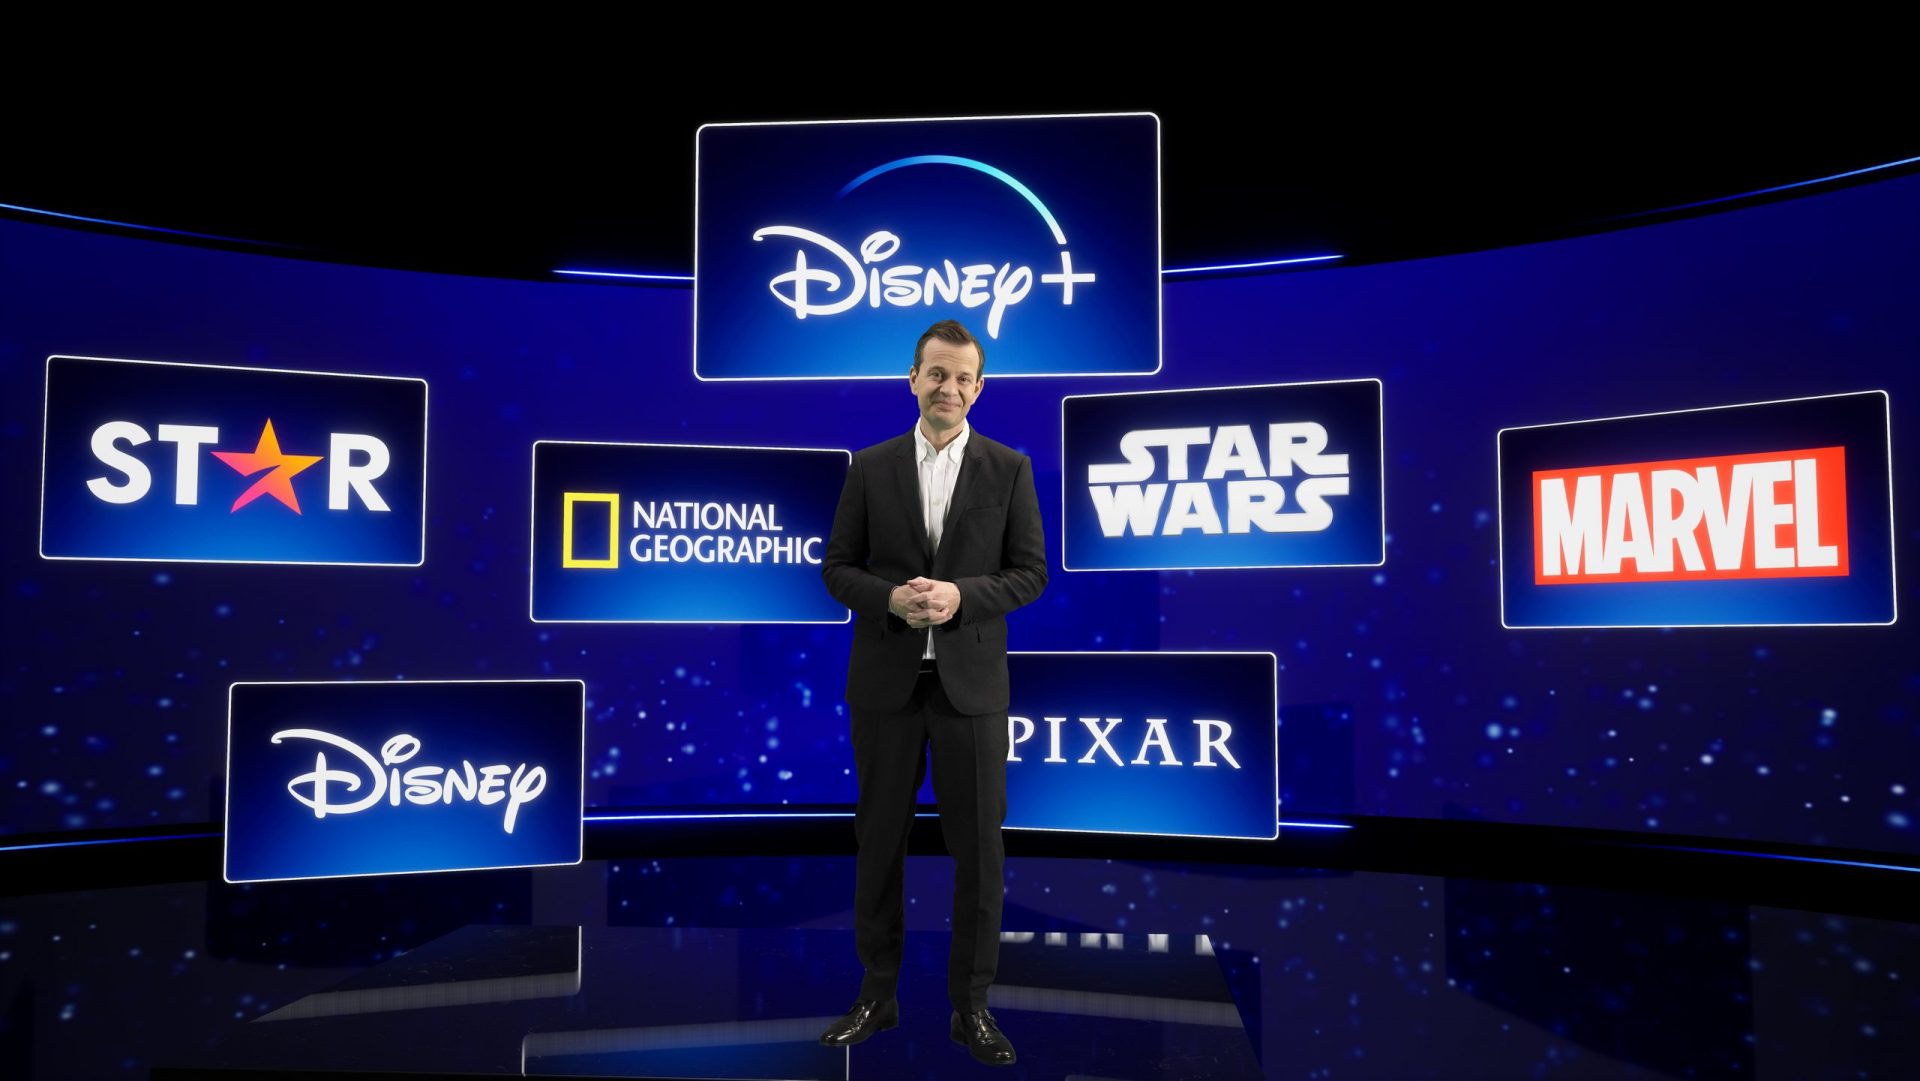 Disney+ øger udbuddet drastisk med Star